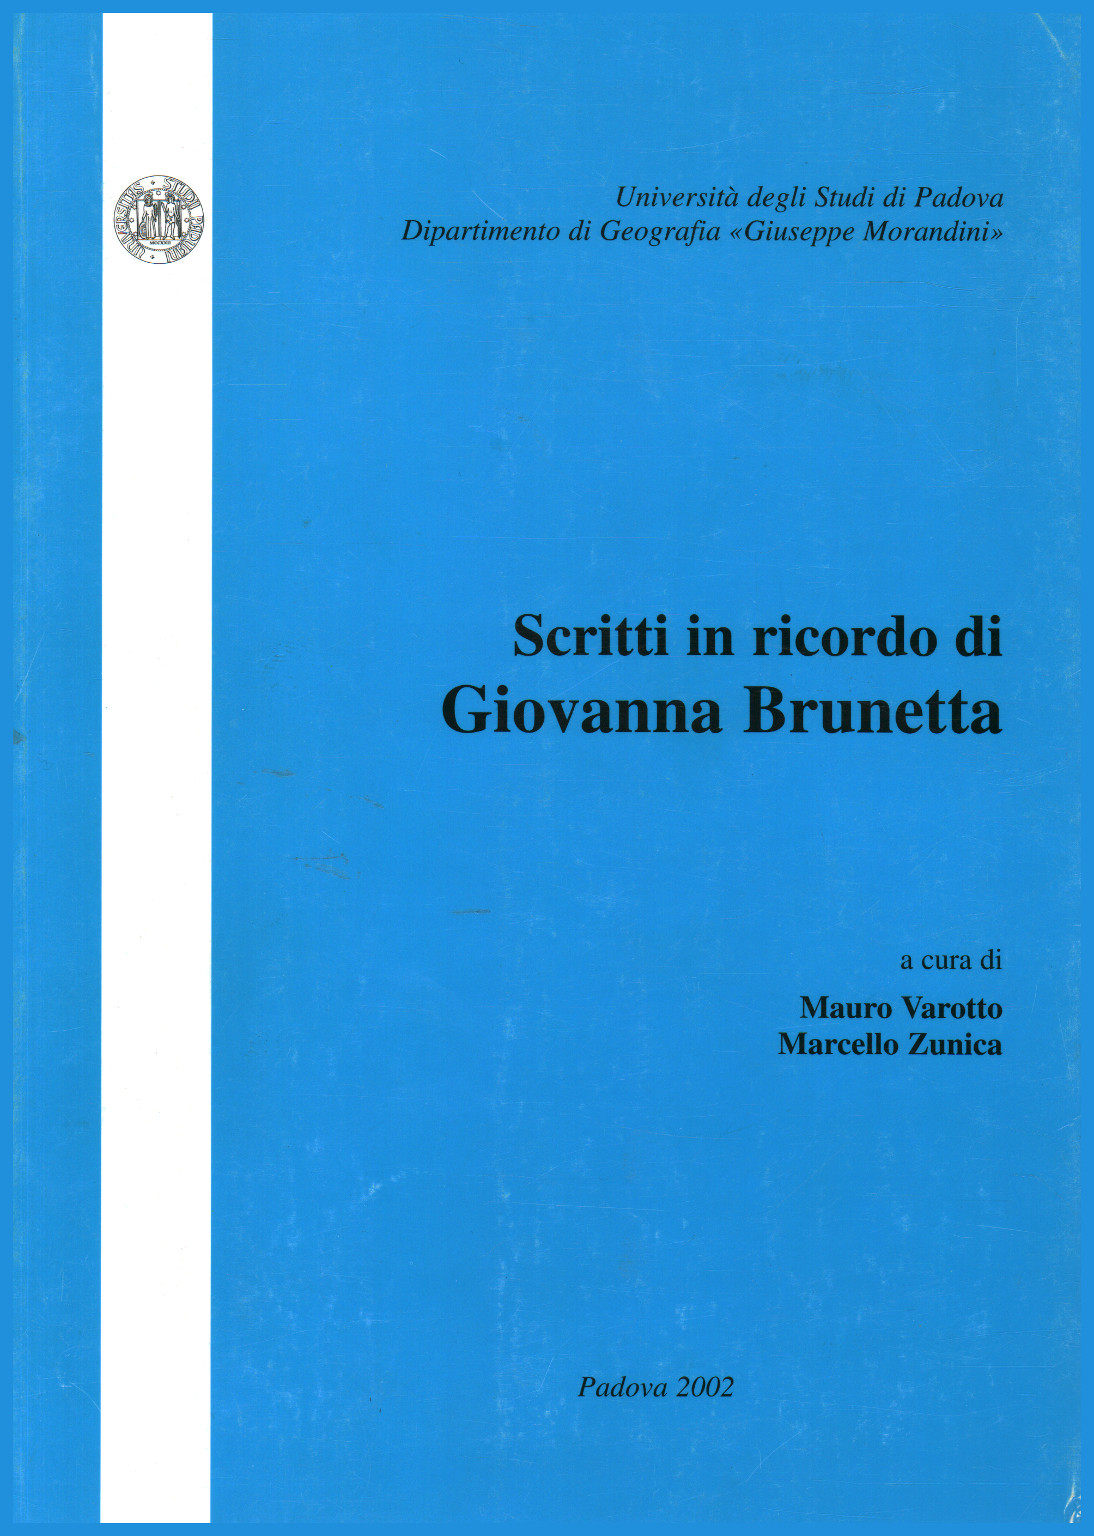 Scritti in ricordo di Giovanna Brunetta, Mauro Varotto Marcello Zunica